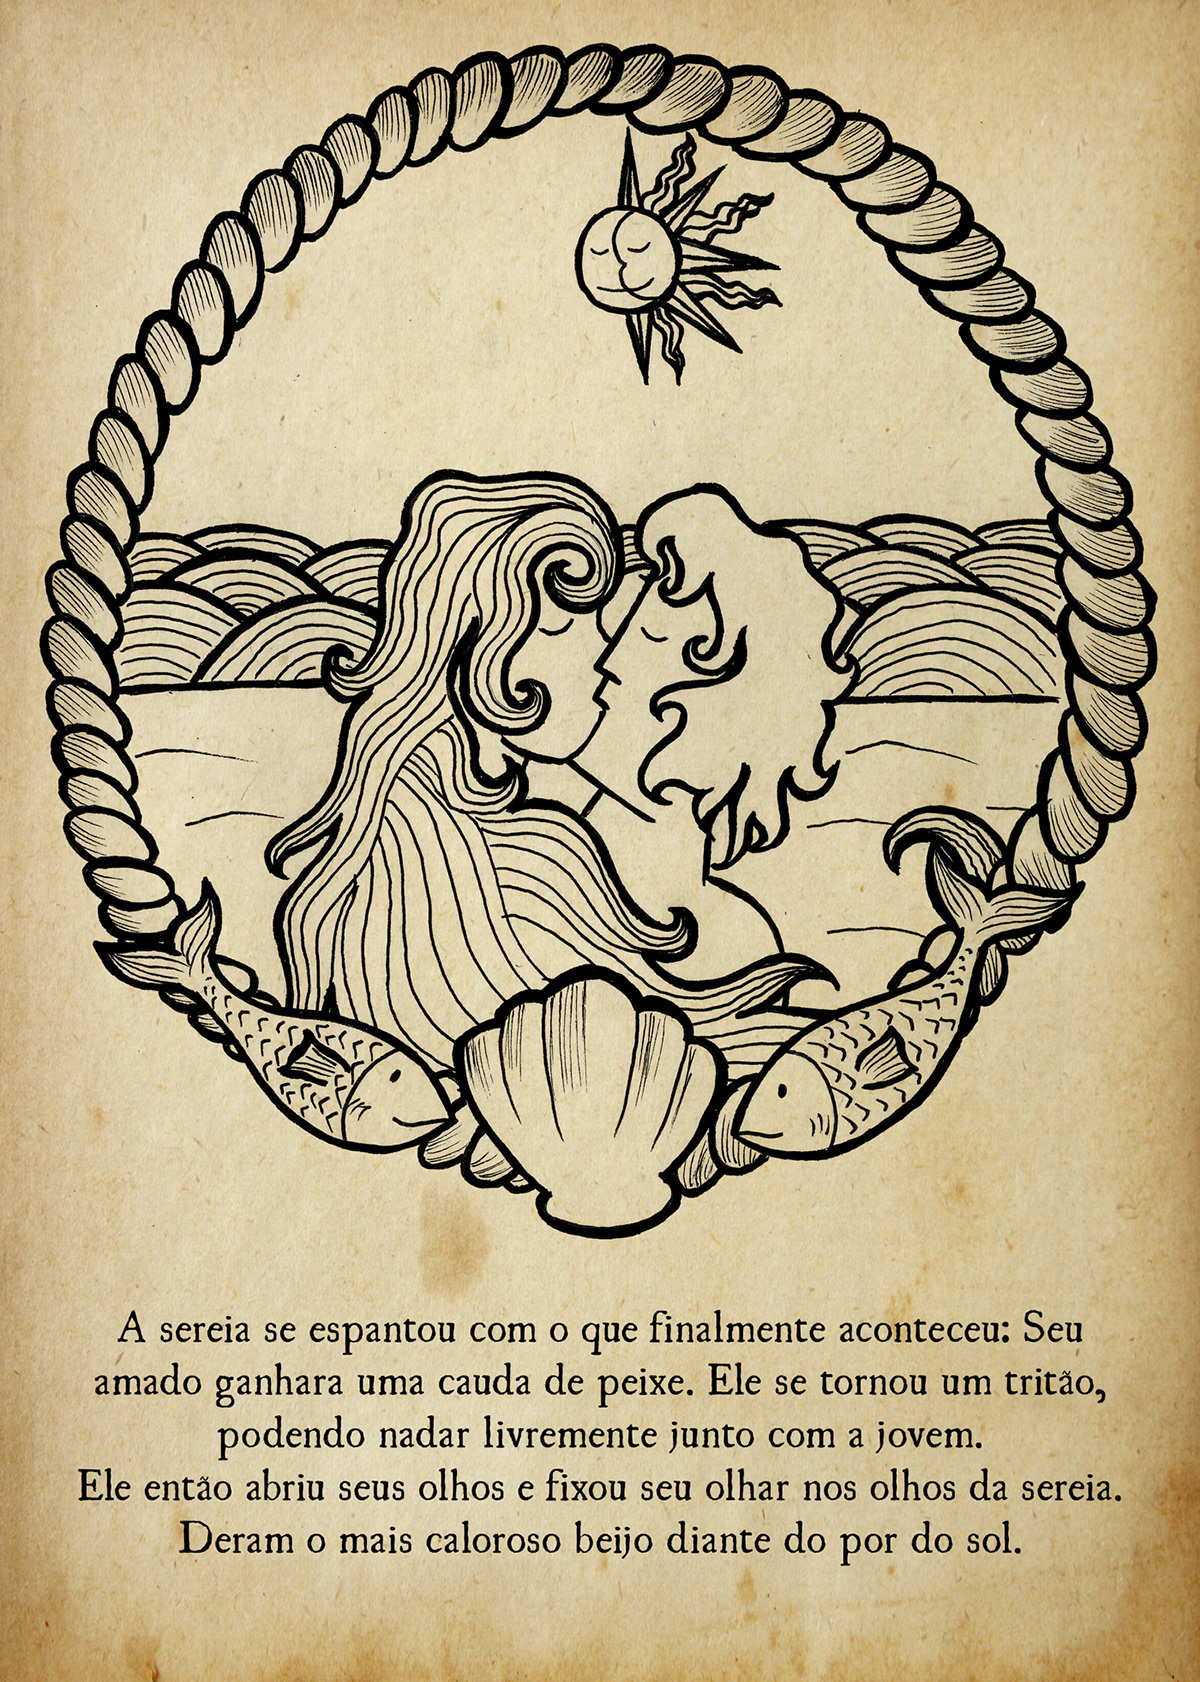 amor conto historia Ilustração mar Marinheiro narrativa nautical sereia